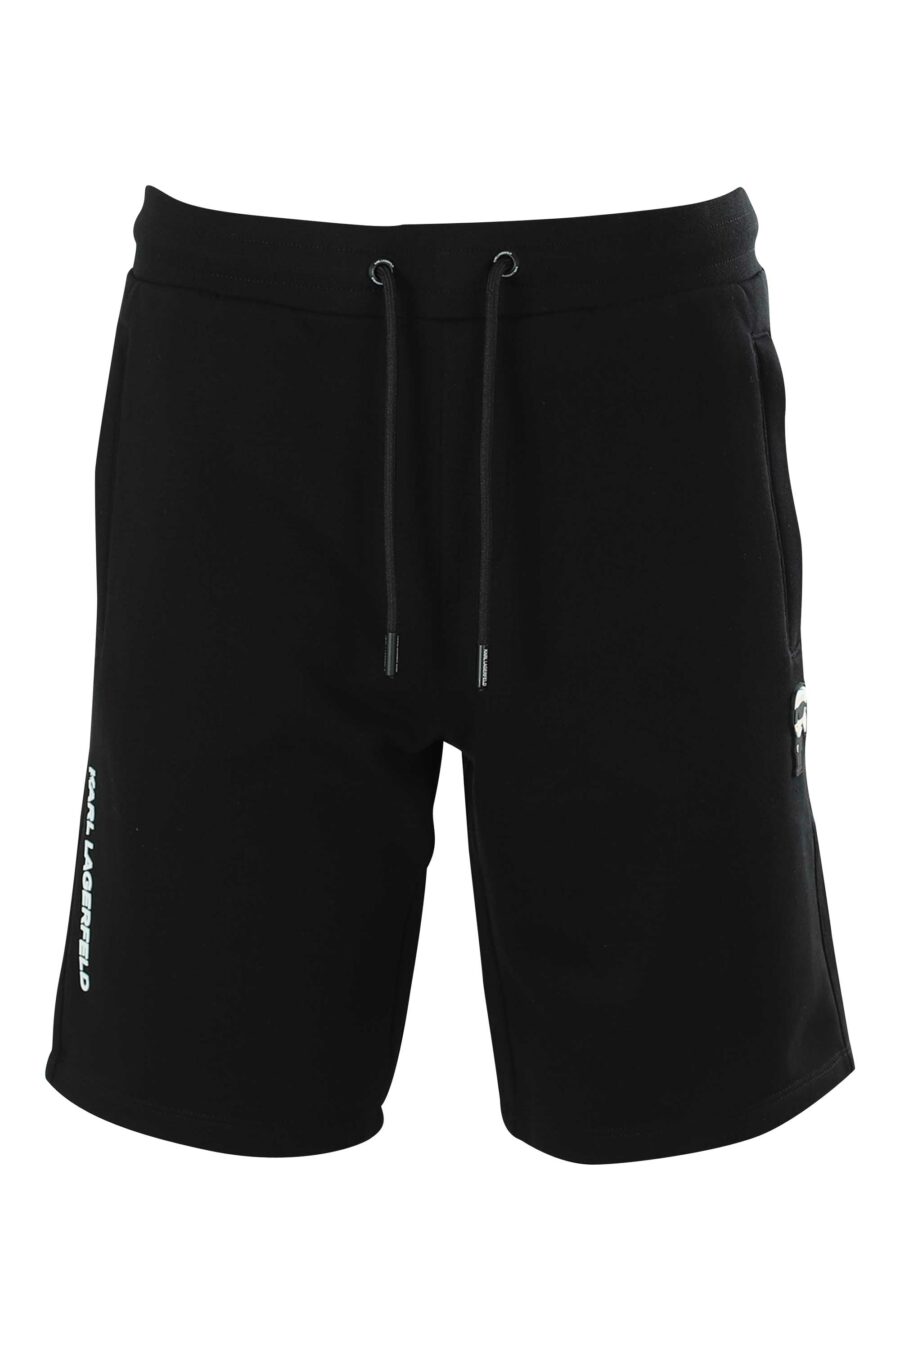 Pantalón de chándal corto negro con logo de goma - 4062226267267